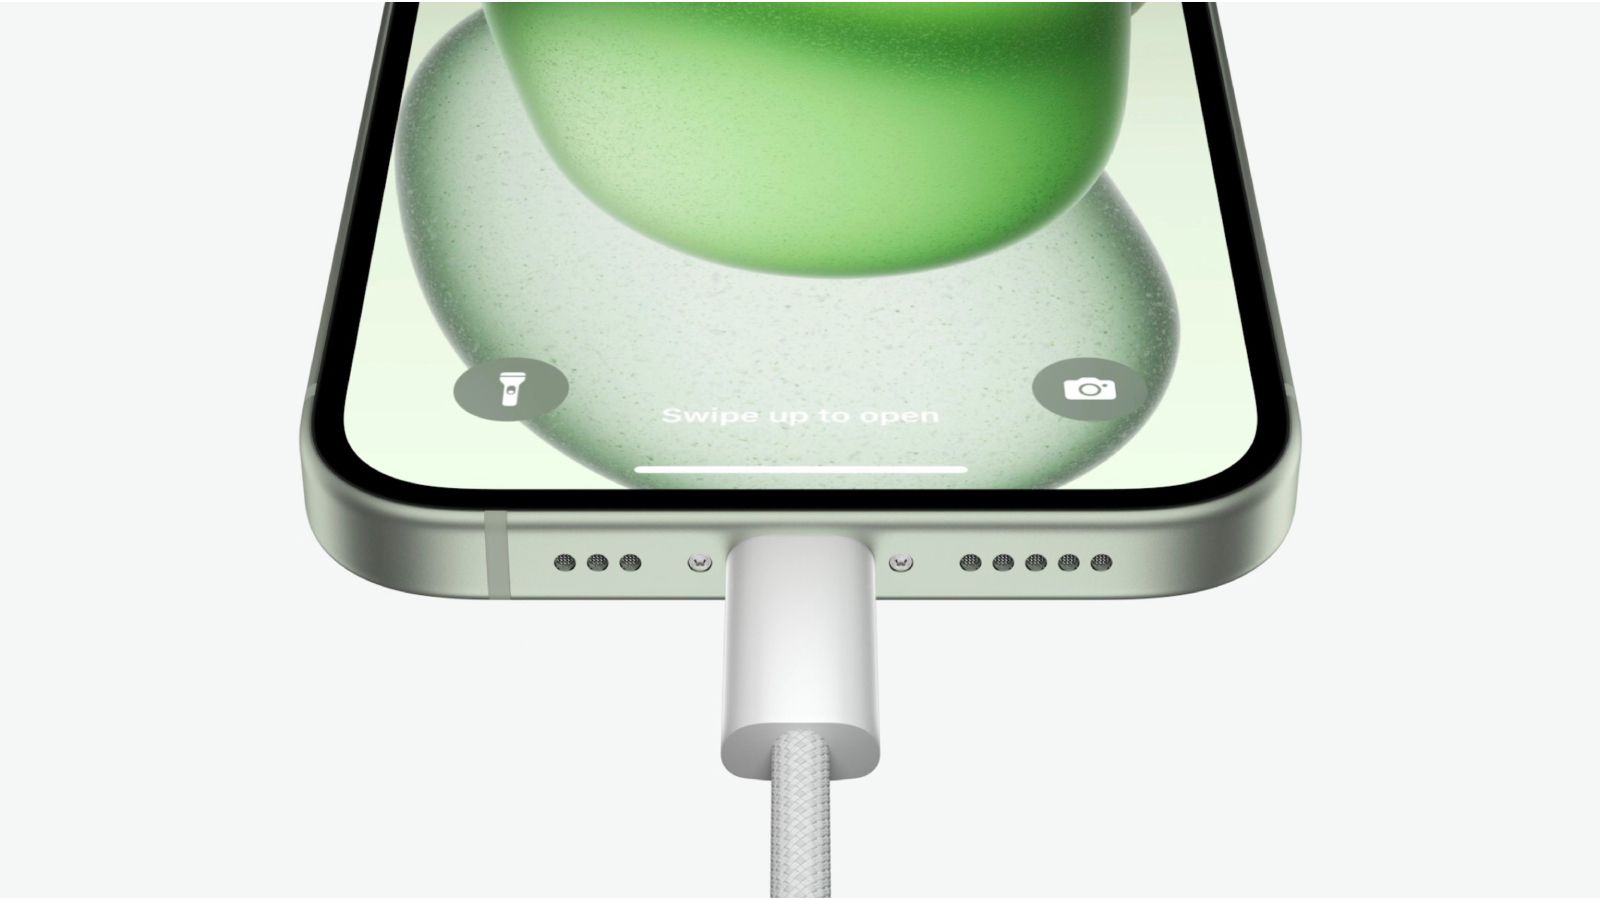 iPhone 15 用 USB-C ポート: アクセサリ用の 4.5W 充電、プロモデル用の USB 3.2 Gen 2 ポートなど